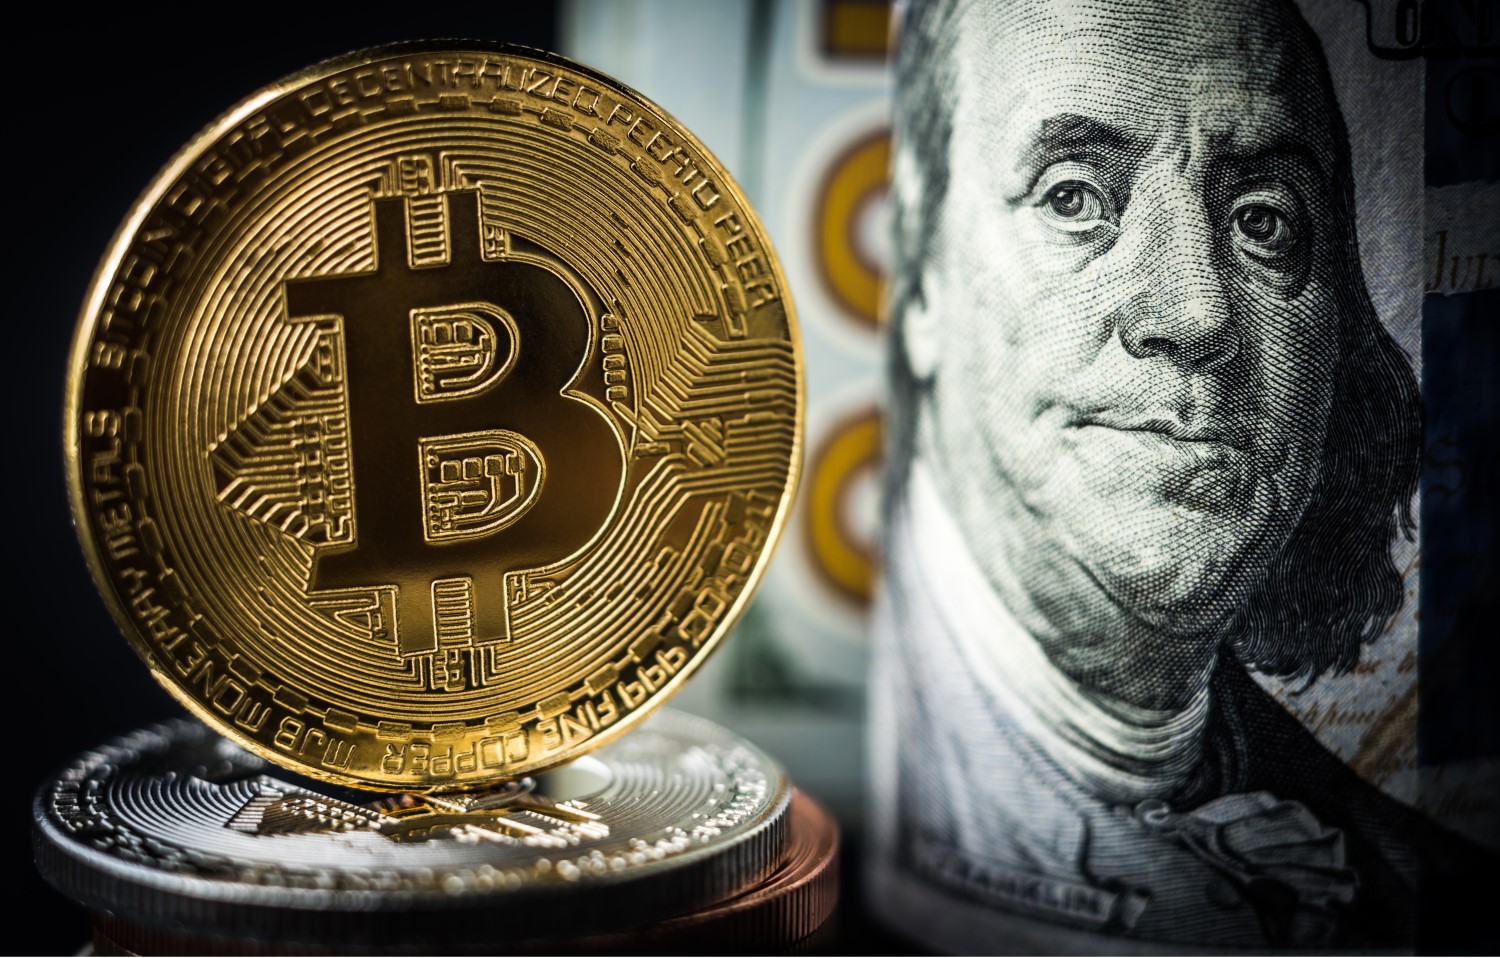 How much cost a bitcoin клод майнинг